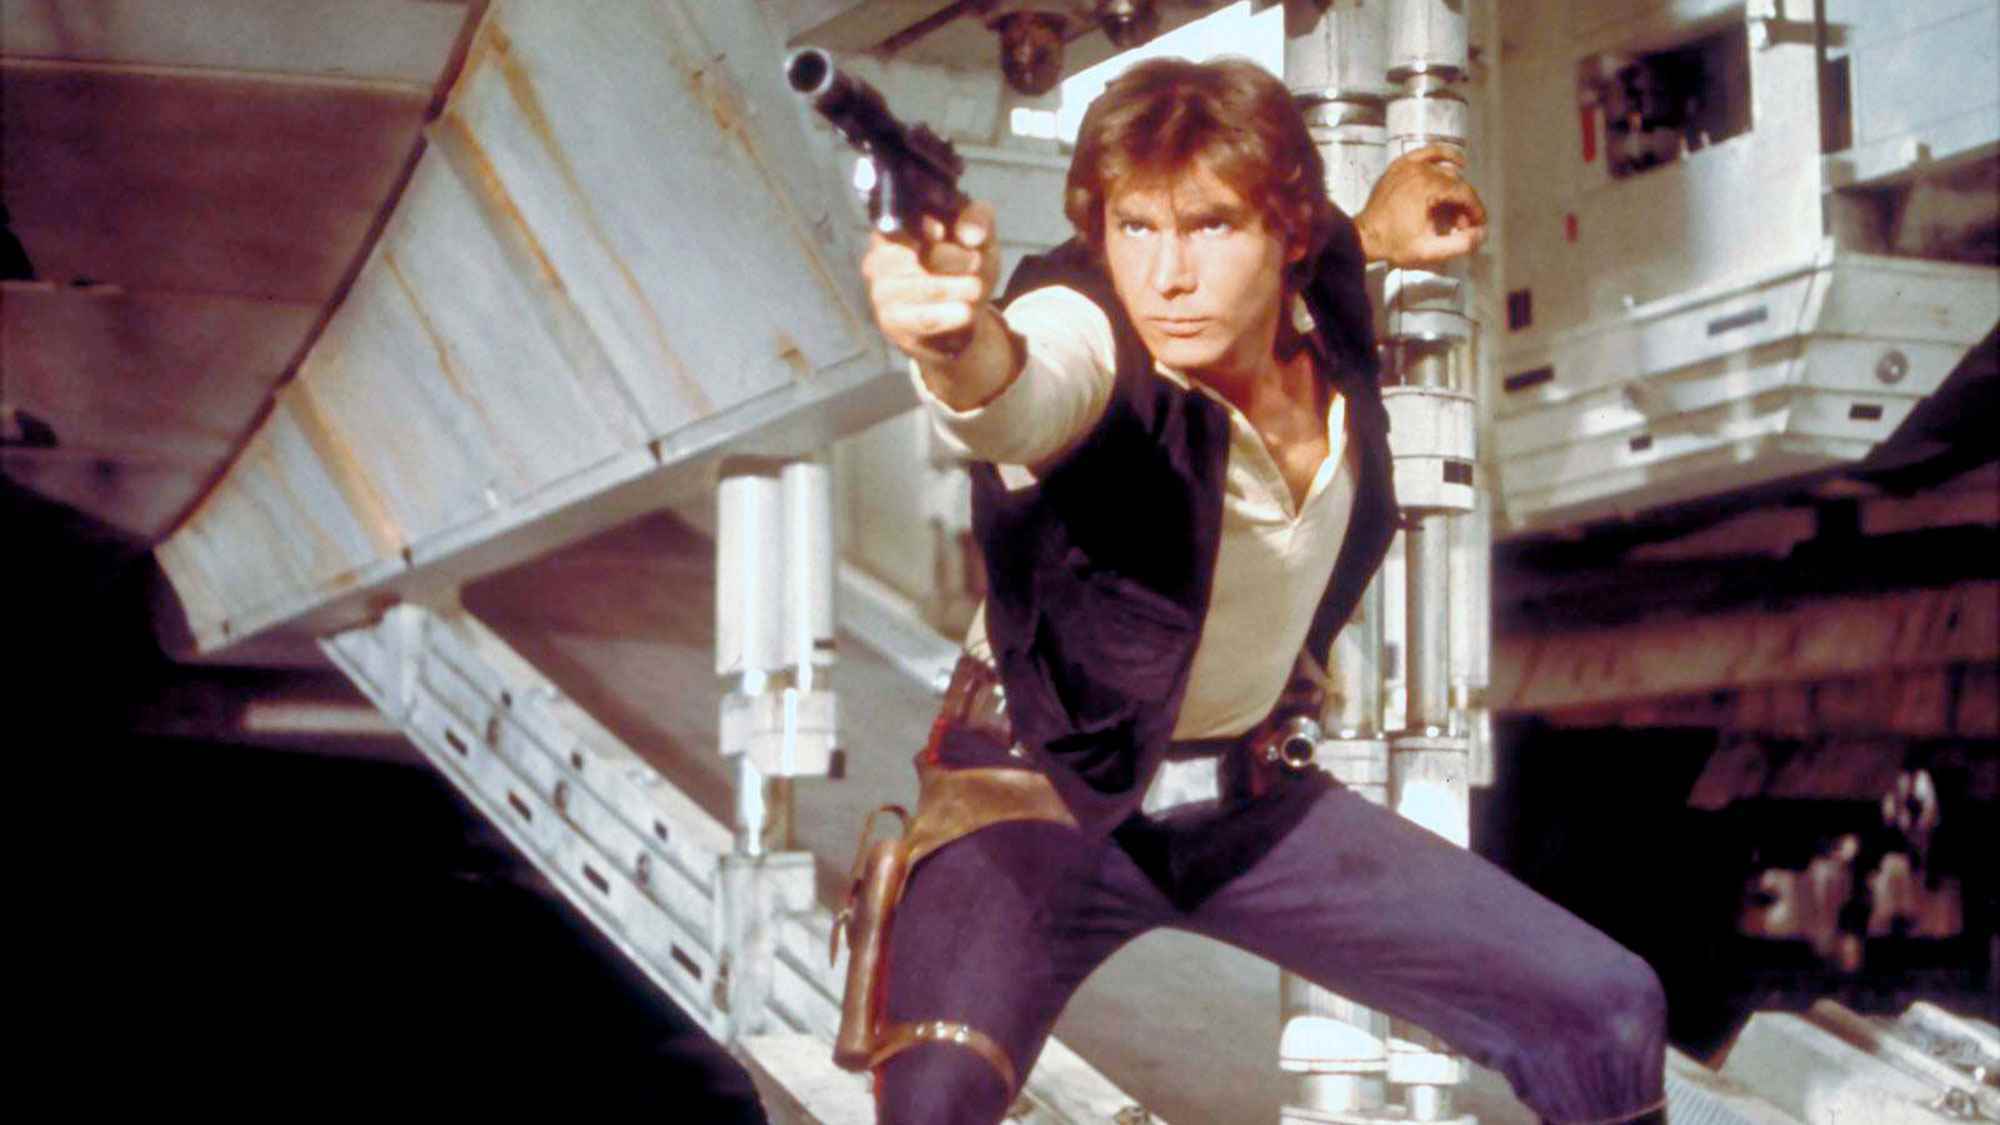 Çıkış tarihi sırasına göre Star Wars filmleri — Star Wars Bölüm IV: Yeni Bir Umut